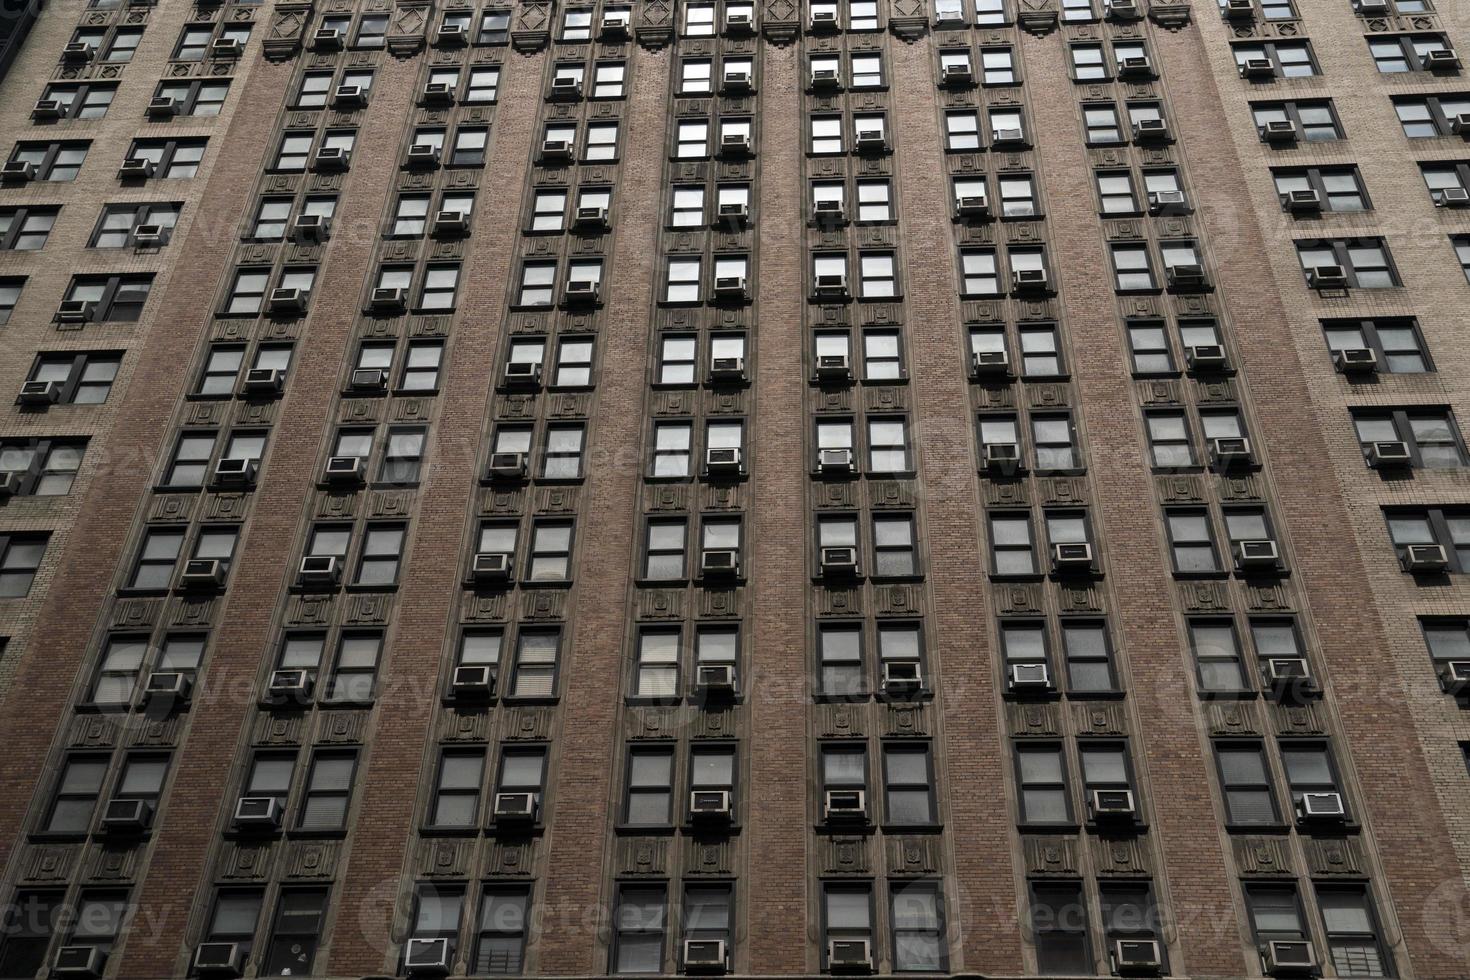 arranha-céus da 5ª avenida de nova york foto